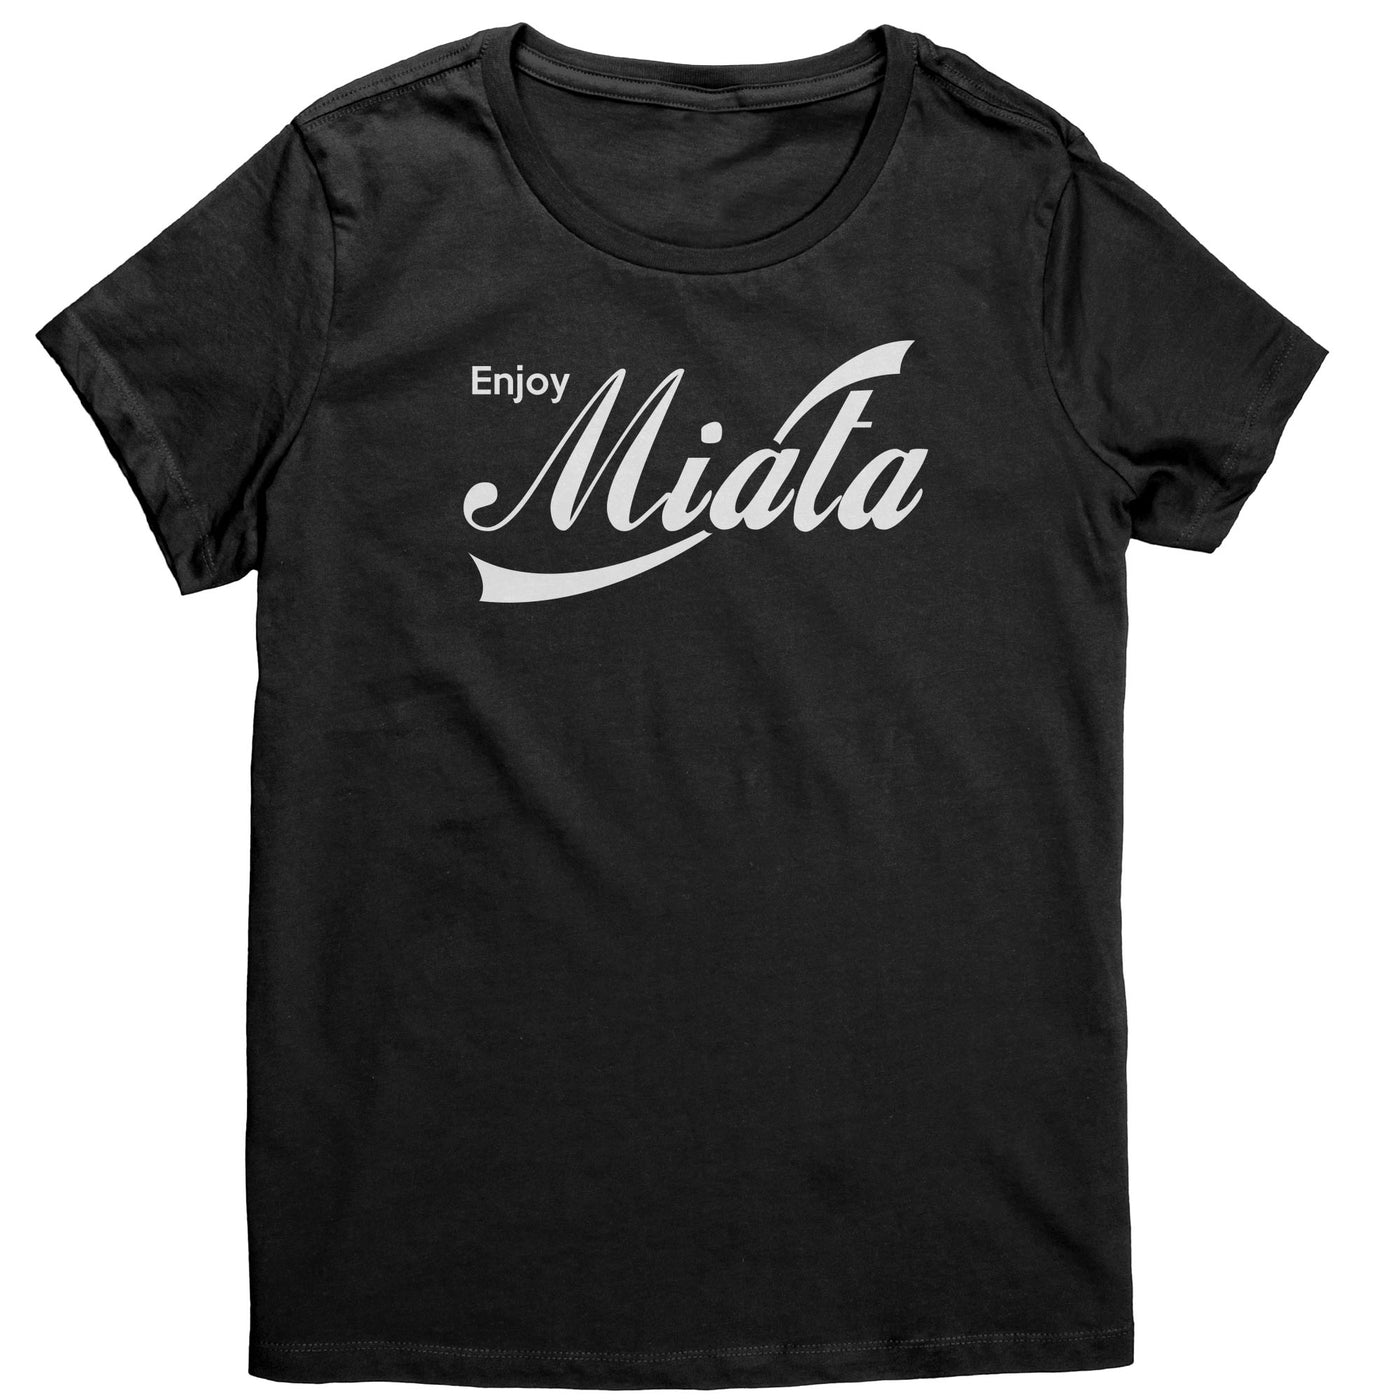 enjoy-miata-womens-shirt-black